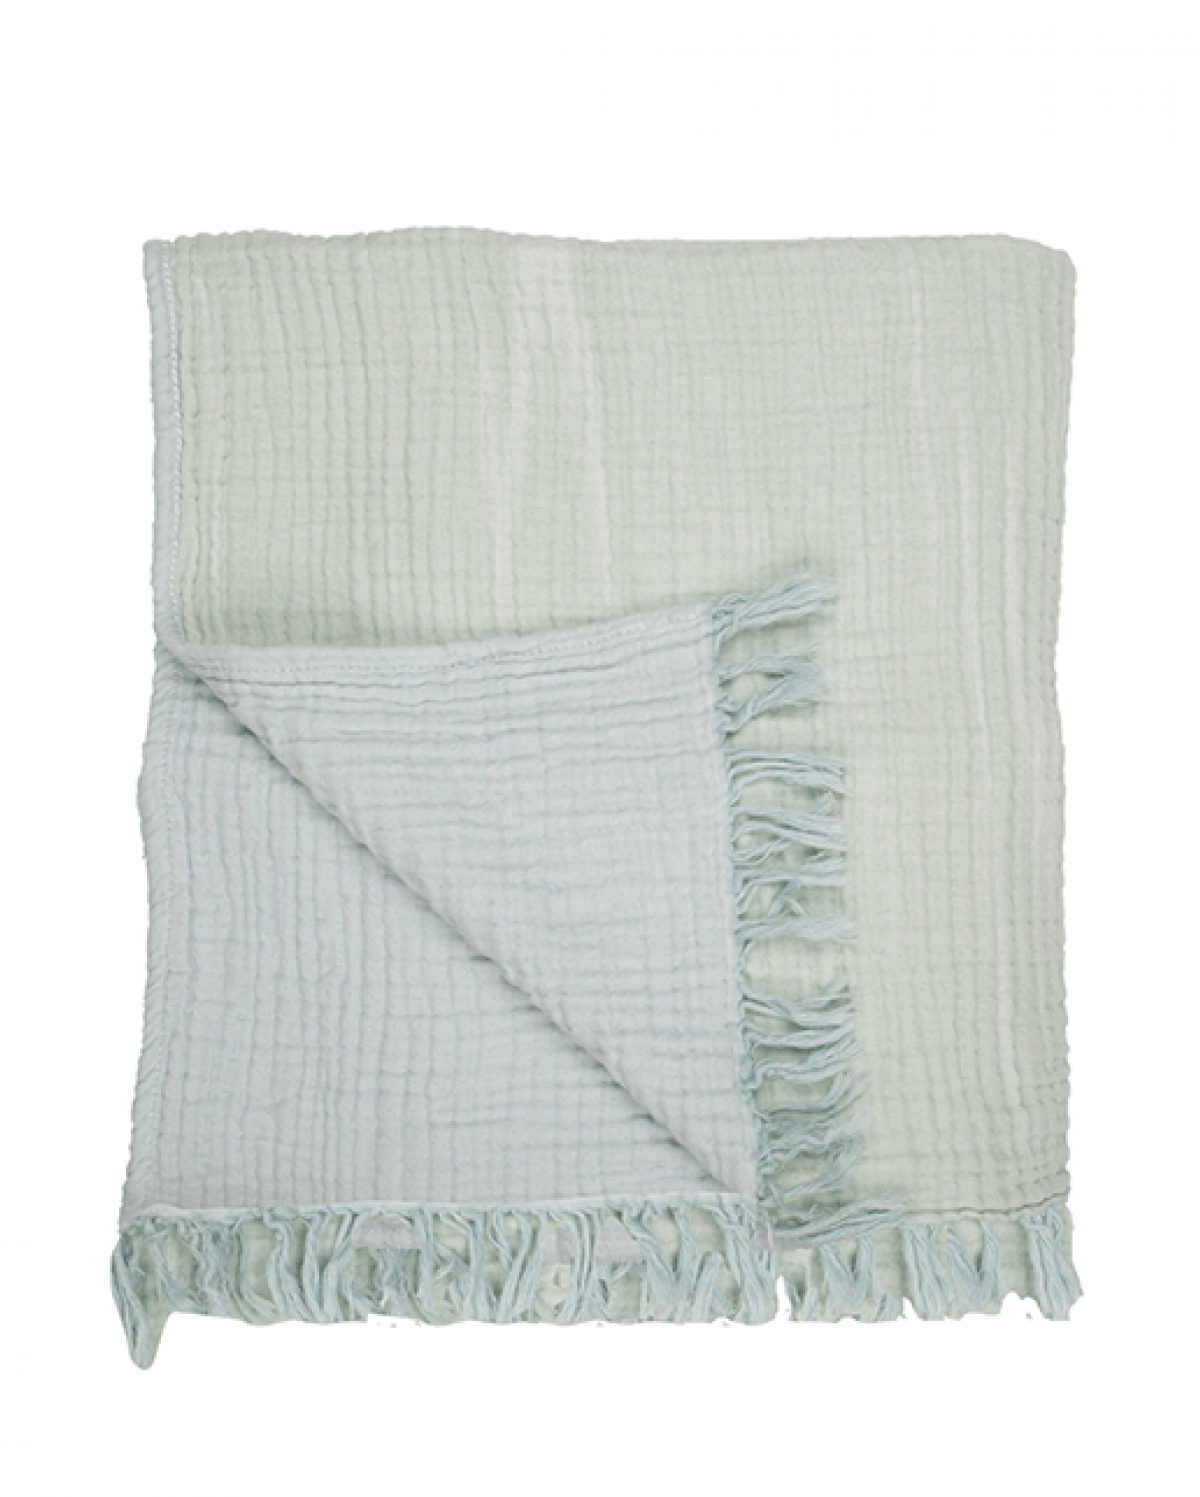 Cocoon Muslin Cotton Blanket- Sage